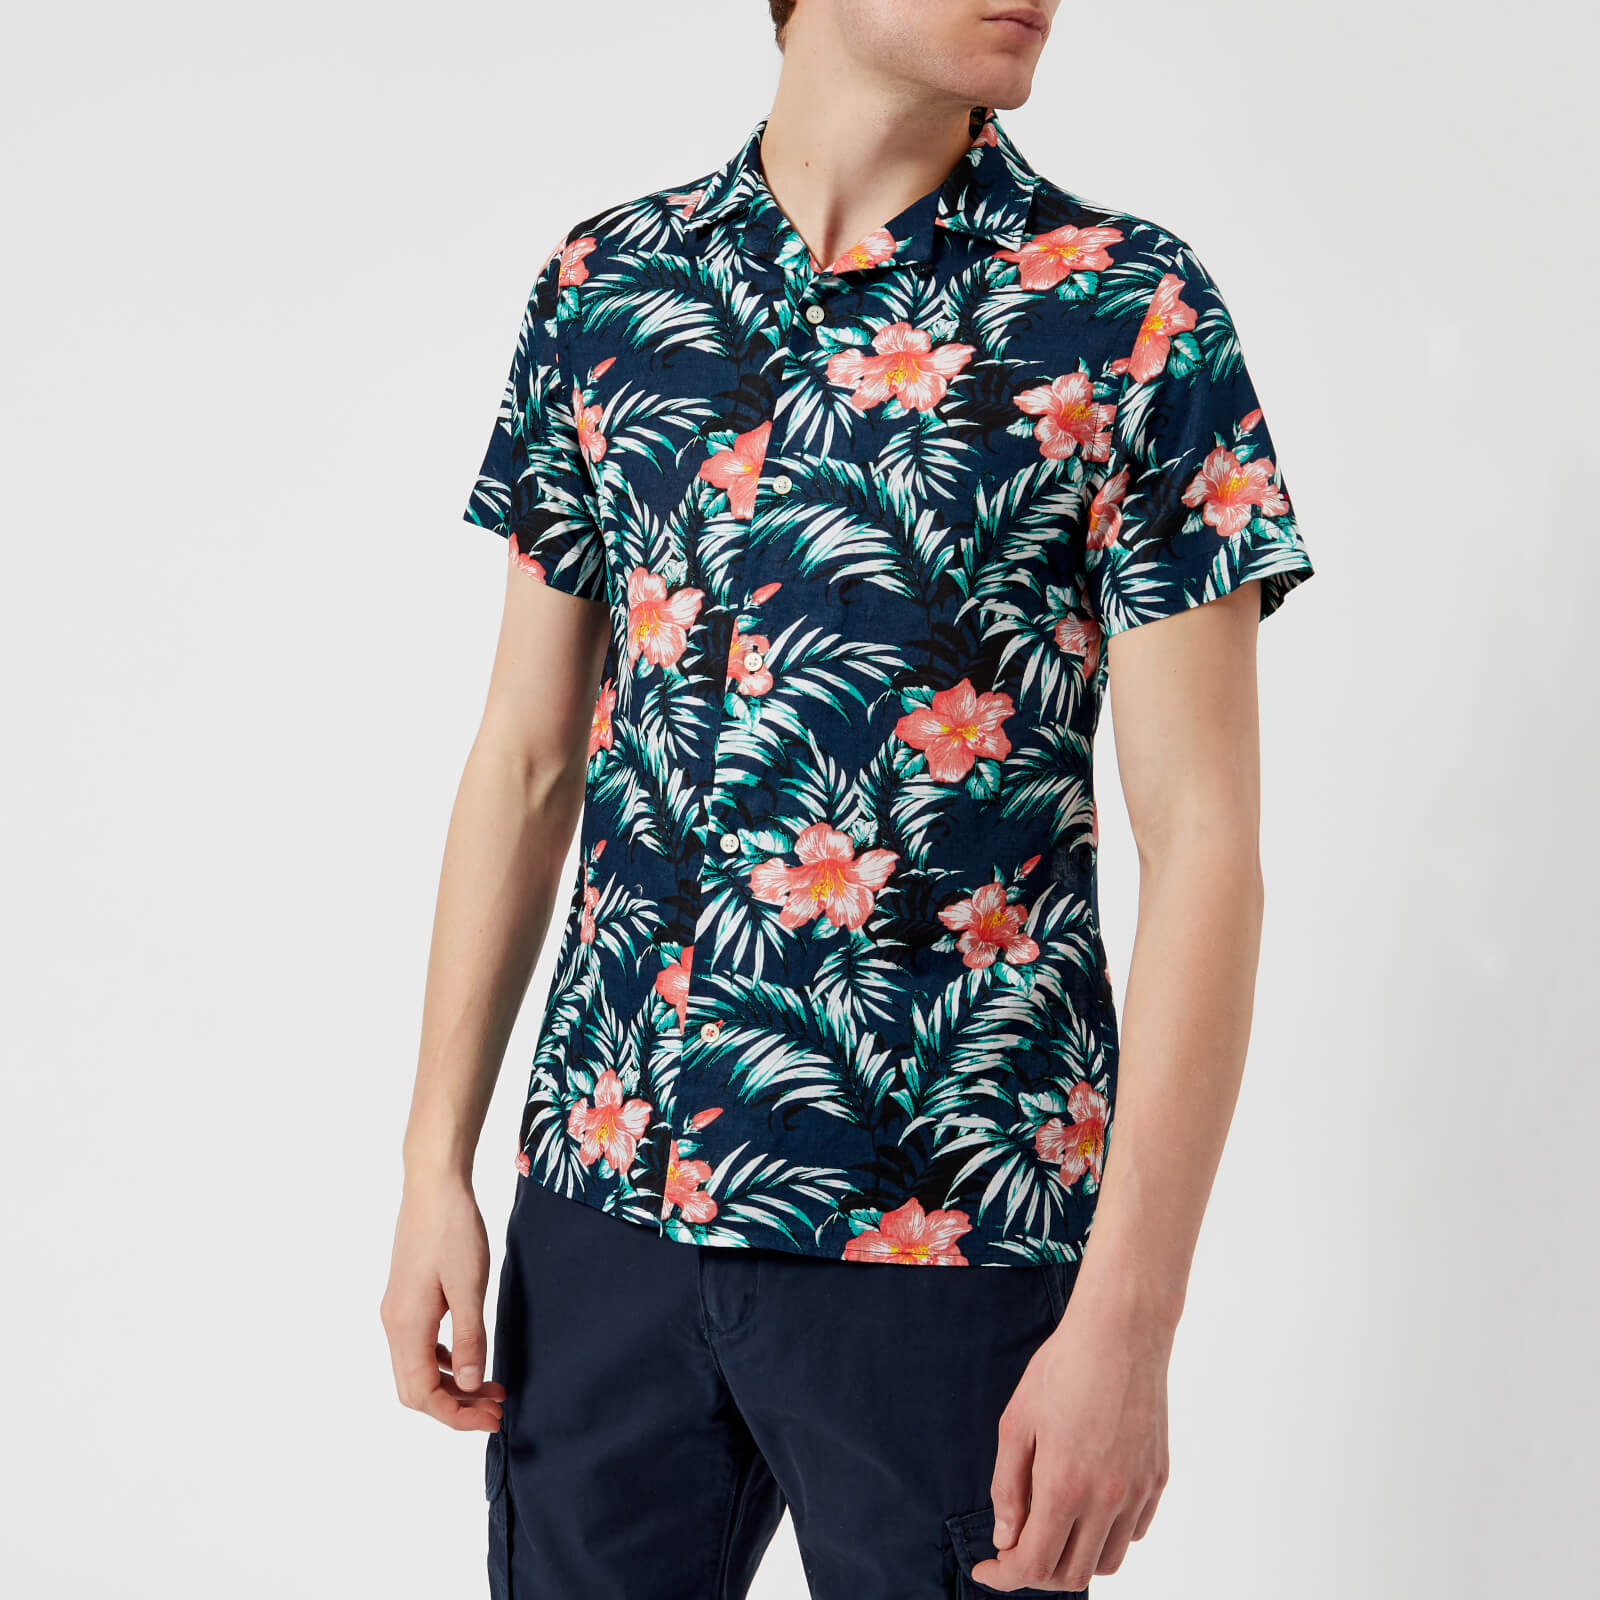 tommy hilfiger hawaiian shirt